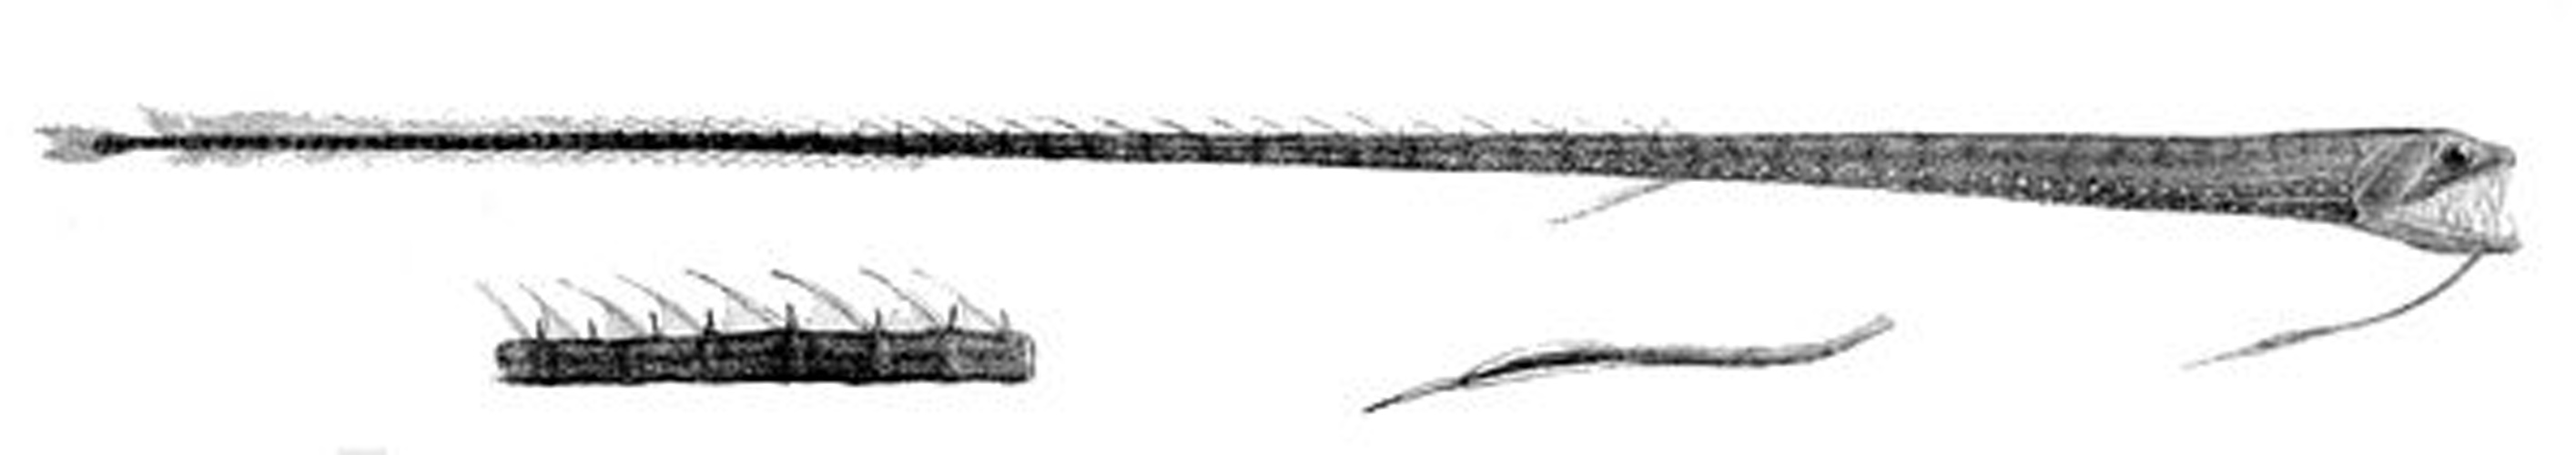 Ribbon sawtail fish © R. Mintern